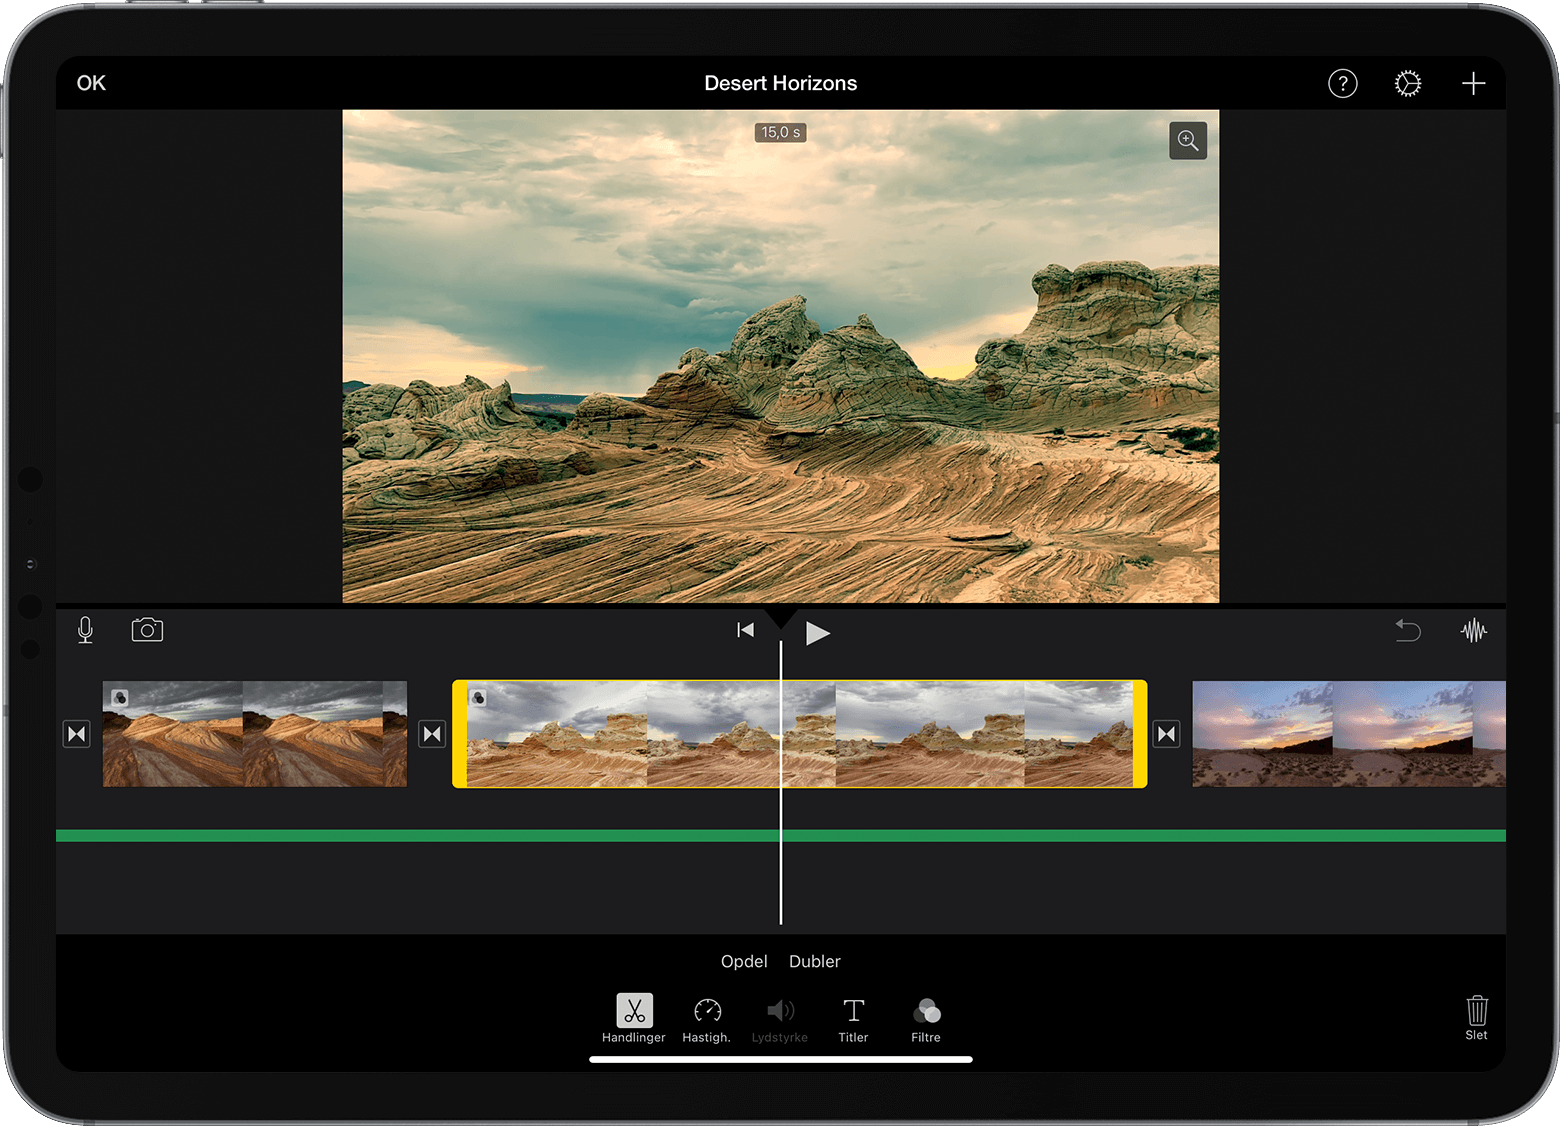 iPad med et åbent iMovie-projekt, hvor der er valgt et videoklip på tidslinjen